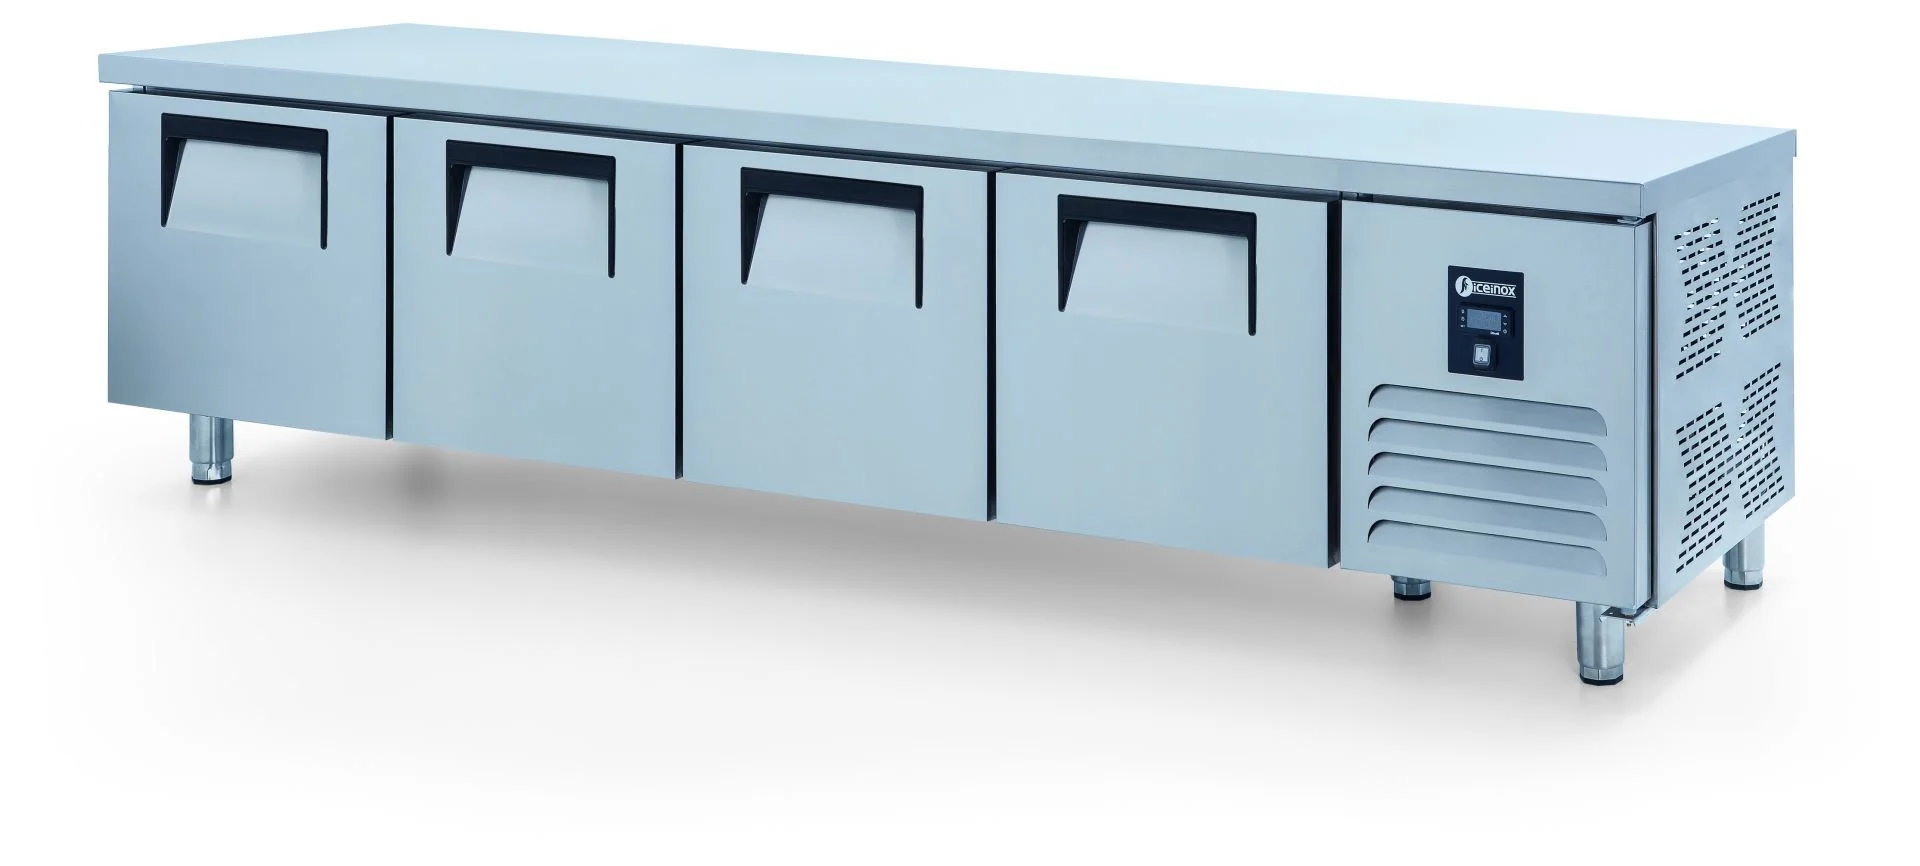 ICEINOX - Iceinox UTS 370 CR Pişirici Altı Buzdolabı, 4 Kapılı, 370 L